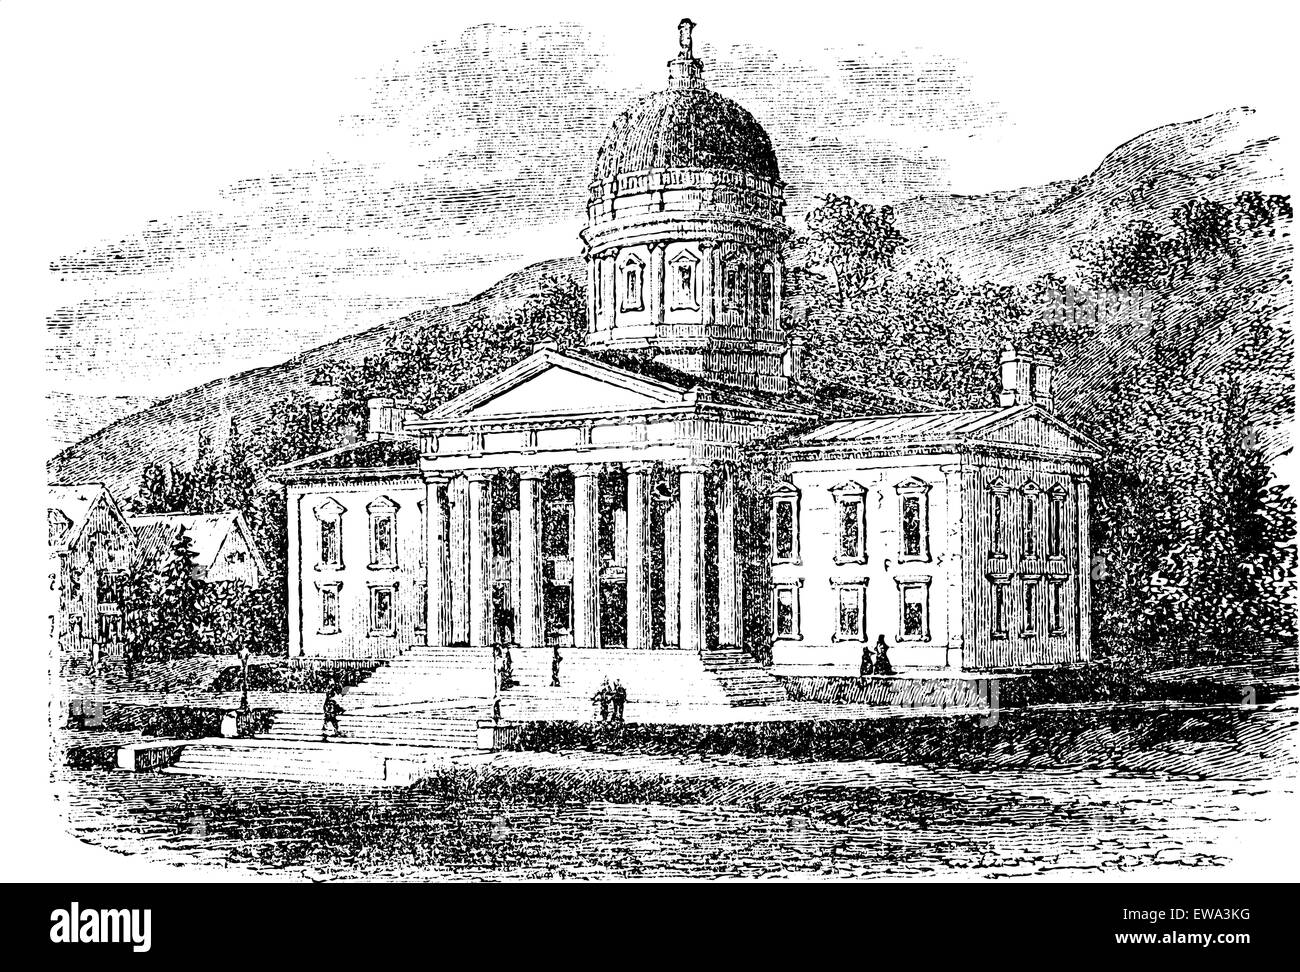 Das State Capitol Building in Montpelier, Vermont, graviert Vintage Illustration. Trousset Enzyklopädie (1886-1891). Stock Vektor